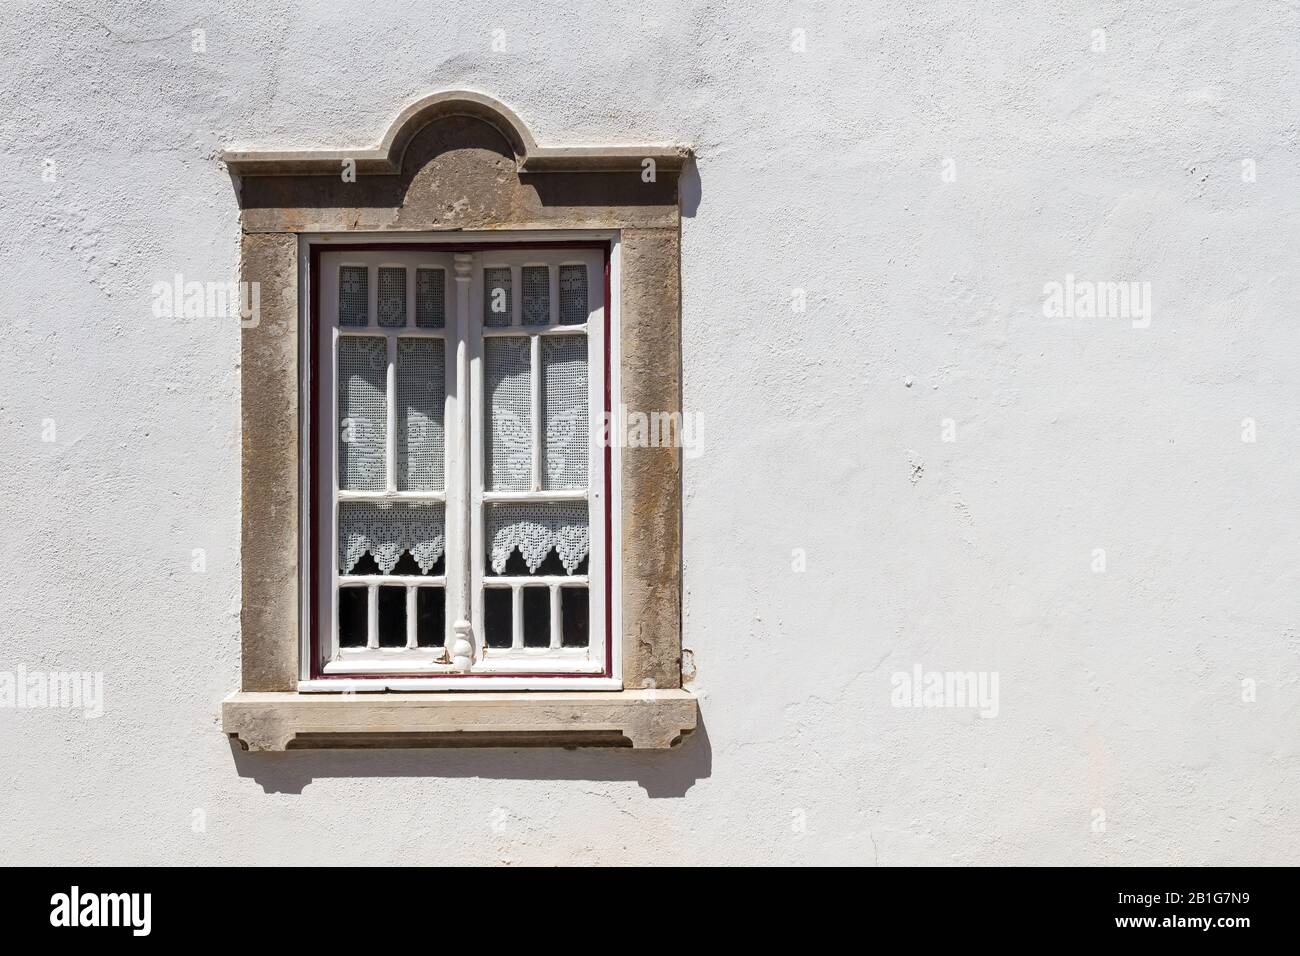 Helle weiße Hauswand an einem sonnigen Tag. Fenster mit weißen Holzdetails und altmodischen Vorhängen. Steinrahmen. Estoi, Portugal. Stockfoto